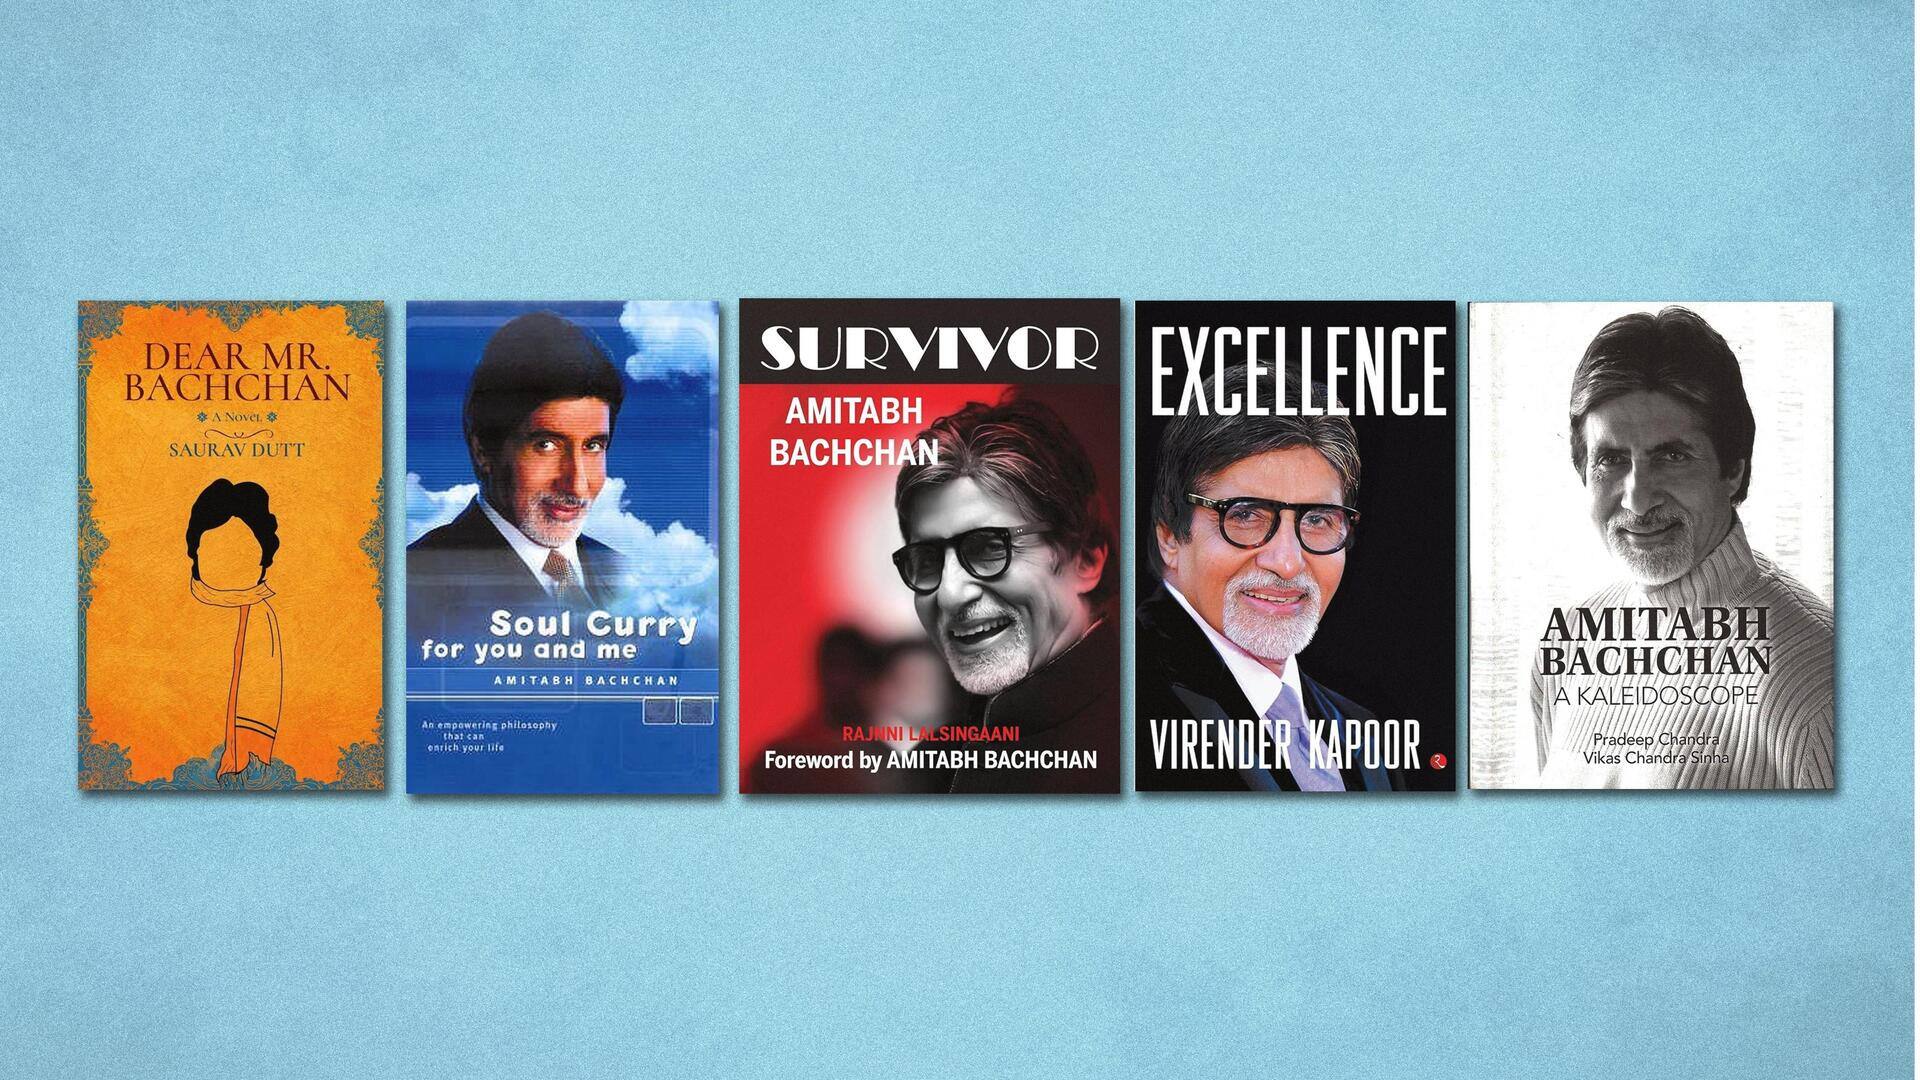 जन्मदिन विशेष: अमिताभ बच्चन को करीब से जानने के लिए पढ़ें ये 5 किताबें